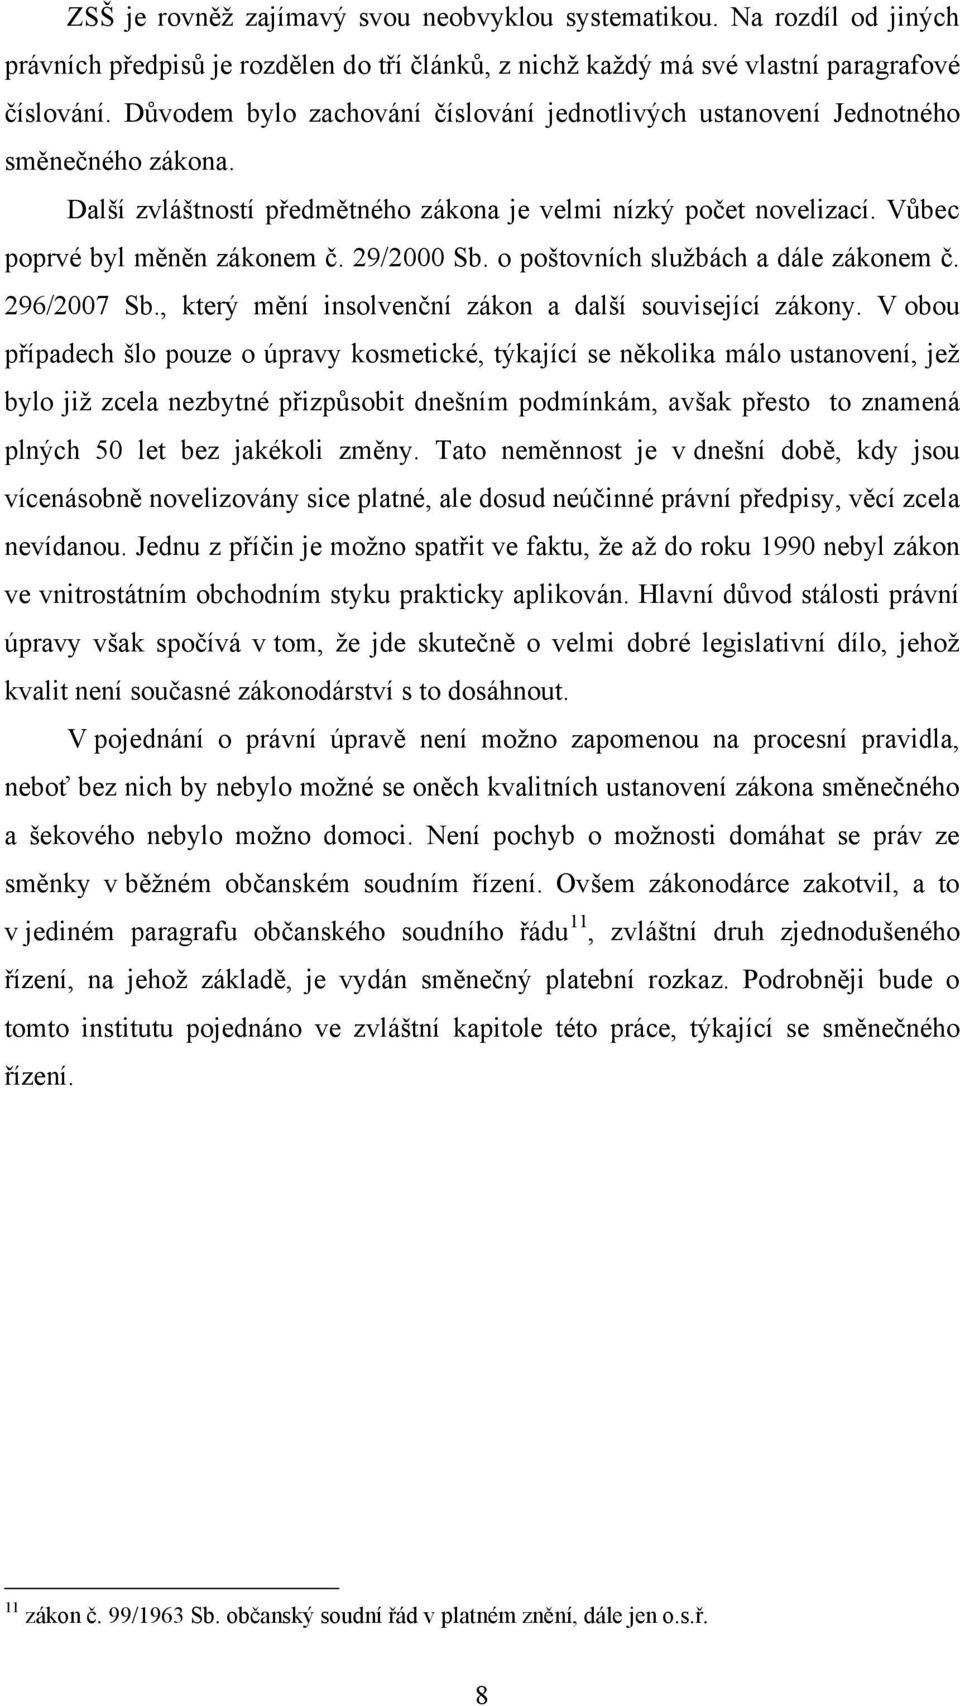 29/2000 Sb. o poštovních sluţbách a dále zákonem č. 296/2007 Sb., který mění insolvenční zákon a další související zákony.